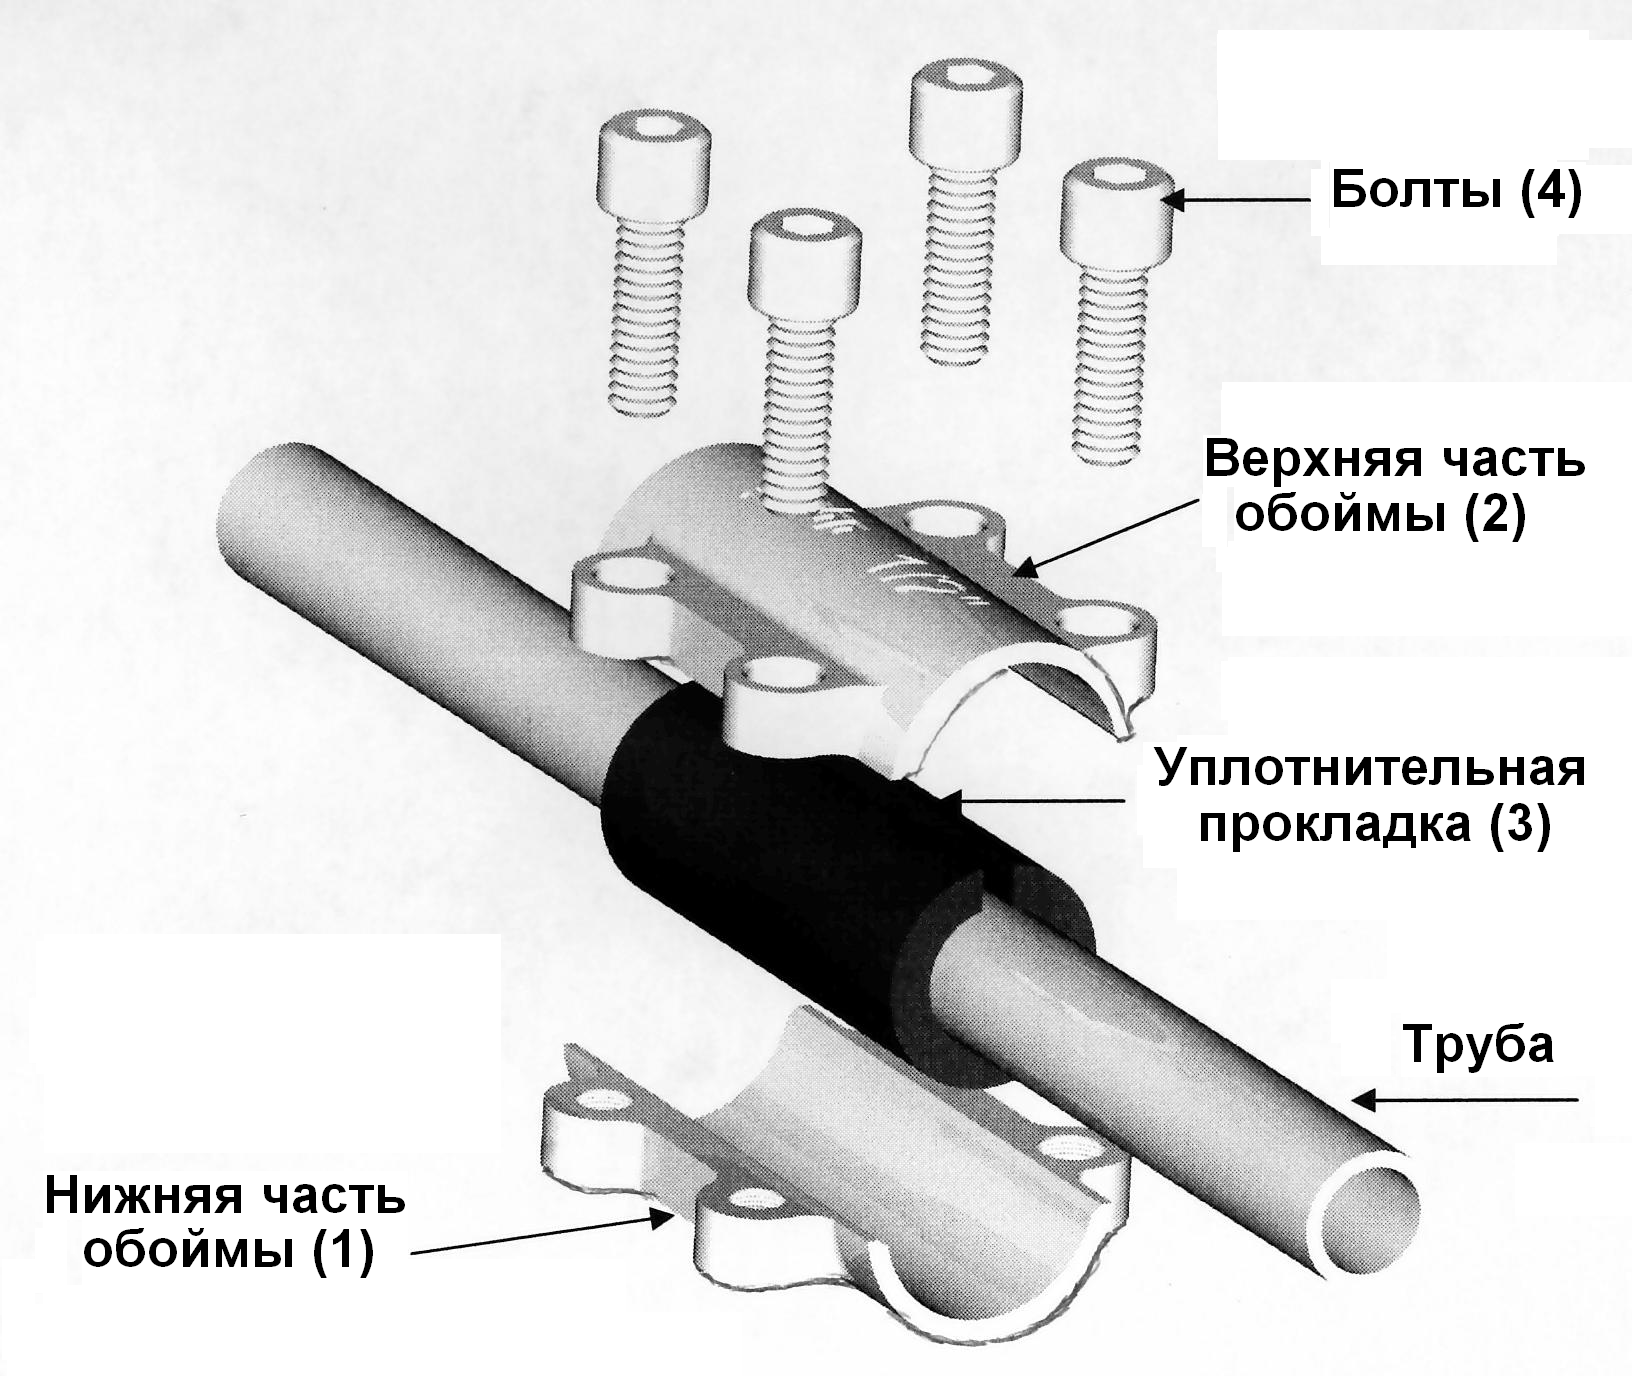 Метод соединения труб. Обойма ремонтная Gebo DSK 1/2". Соединение металлических труб без сварки и резьбы. Ремонтная муфта для полипропиленовых труб 1/2. Схема соединения стальных труб на резьбе.